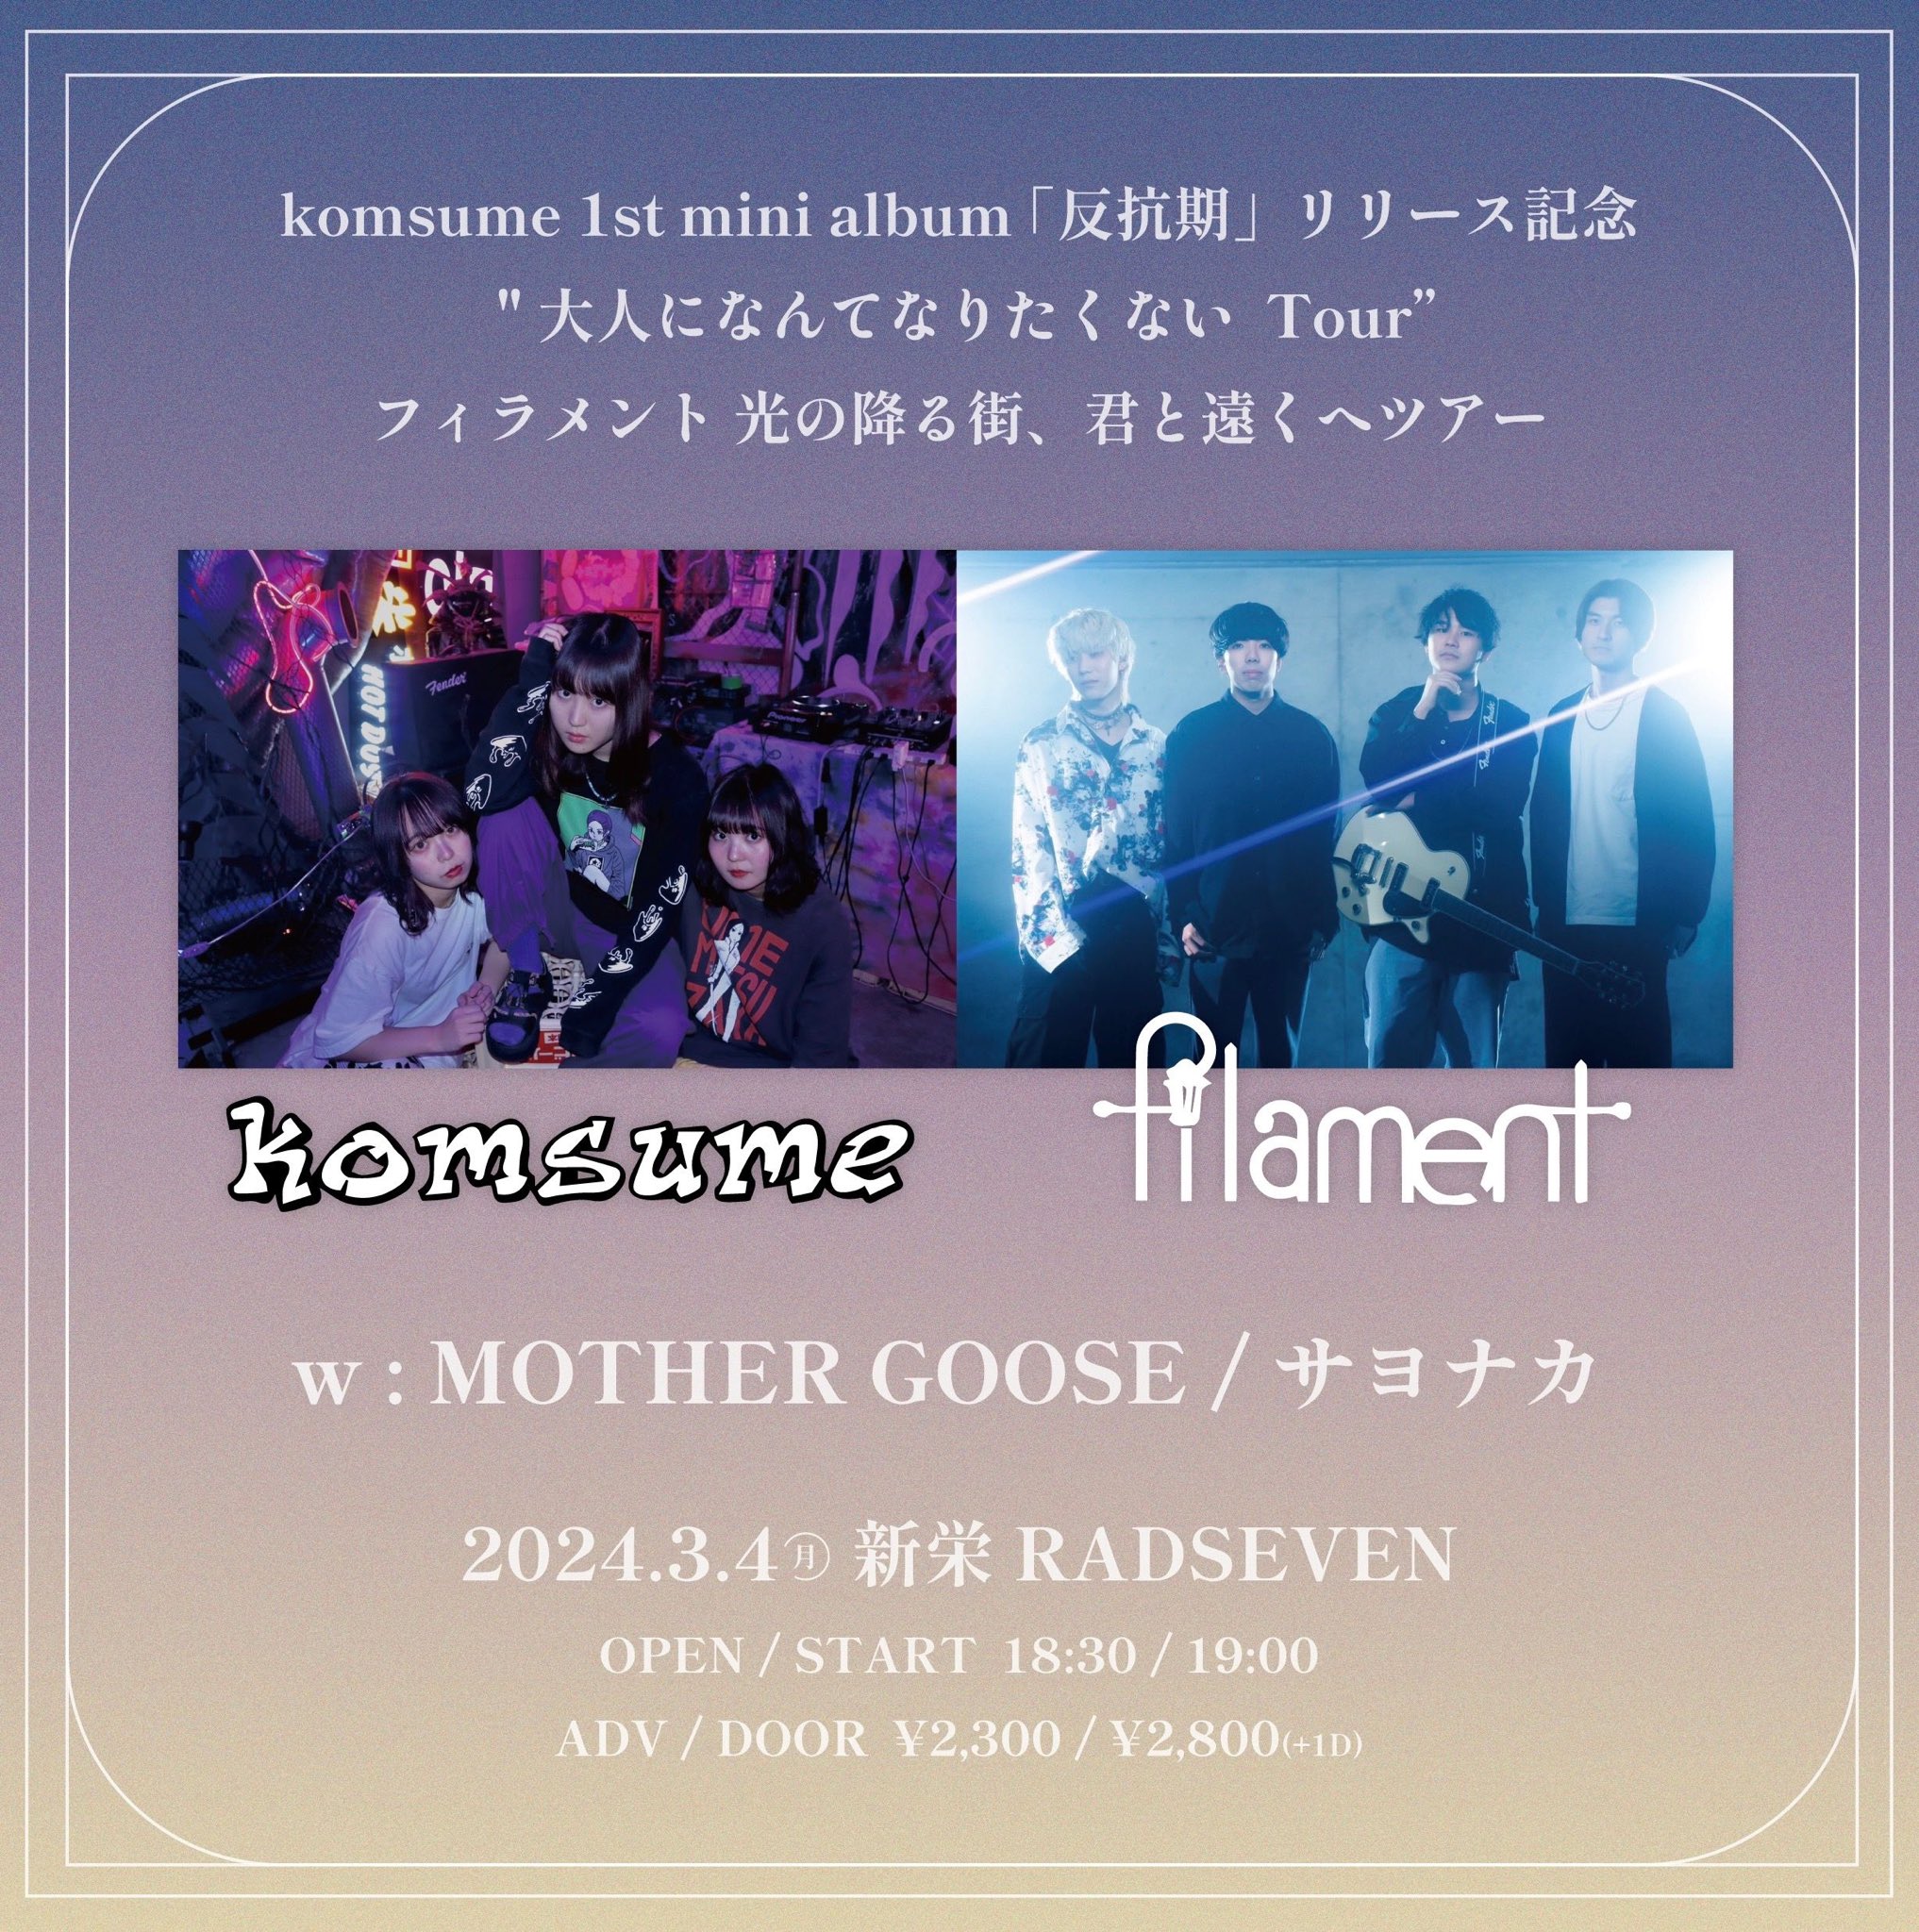 komsume 1st mini album 「反抗期」リリース記念  "大人になんてなりたくない“Tour フィラメント 光の降る街、君と遠くへツアー